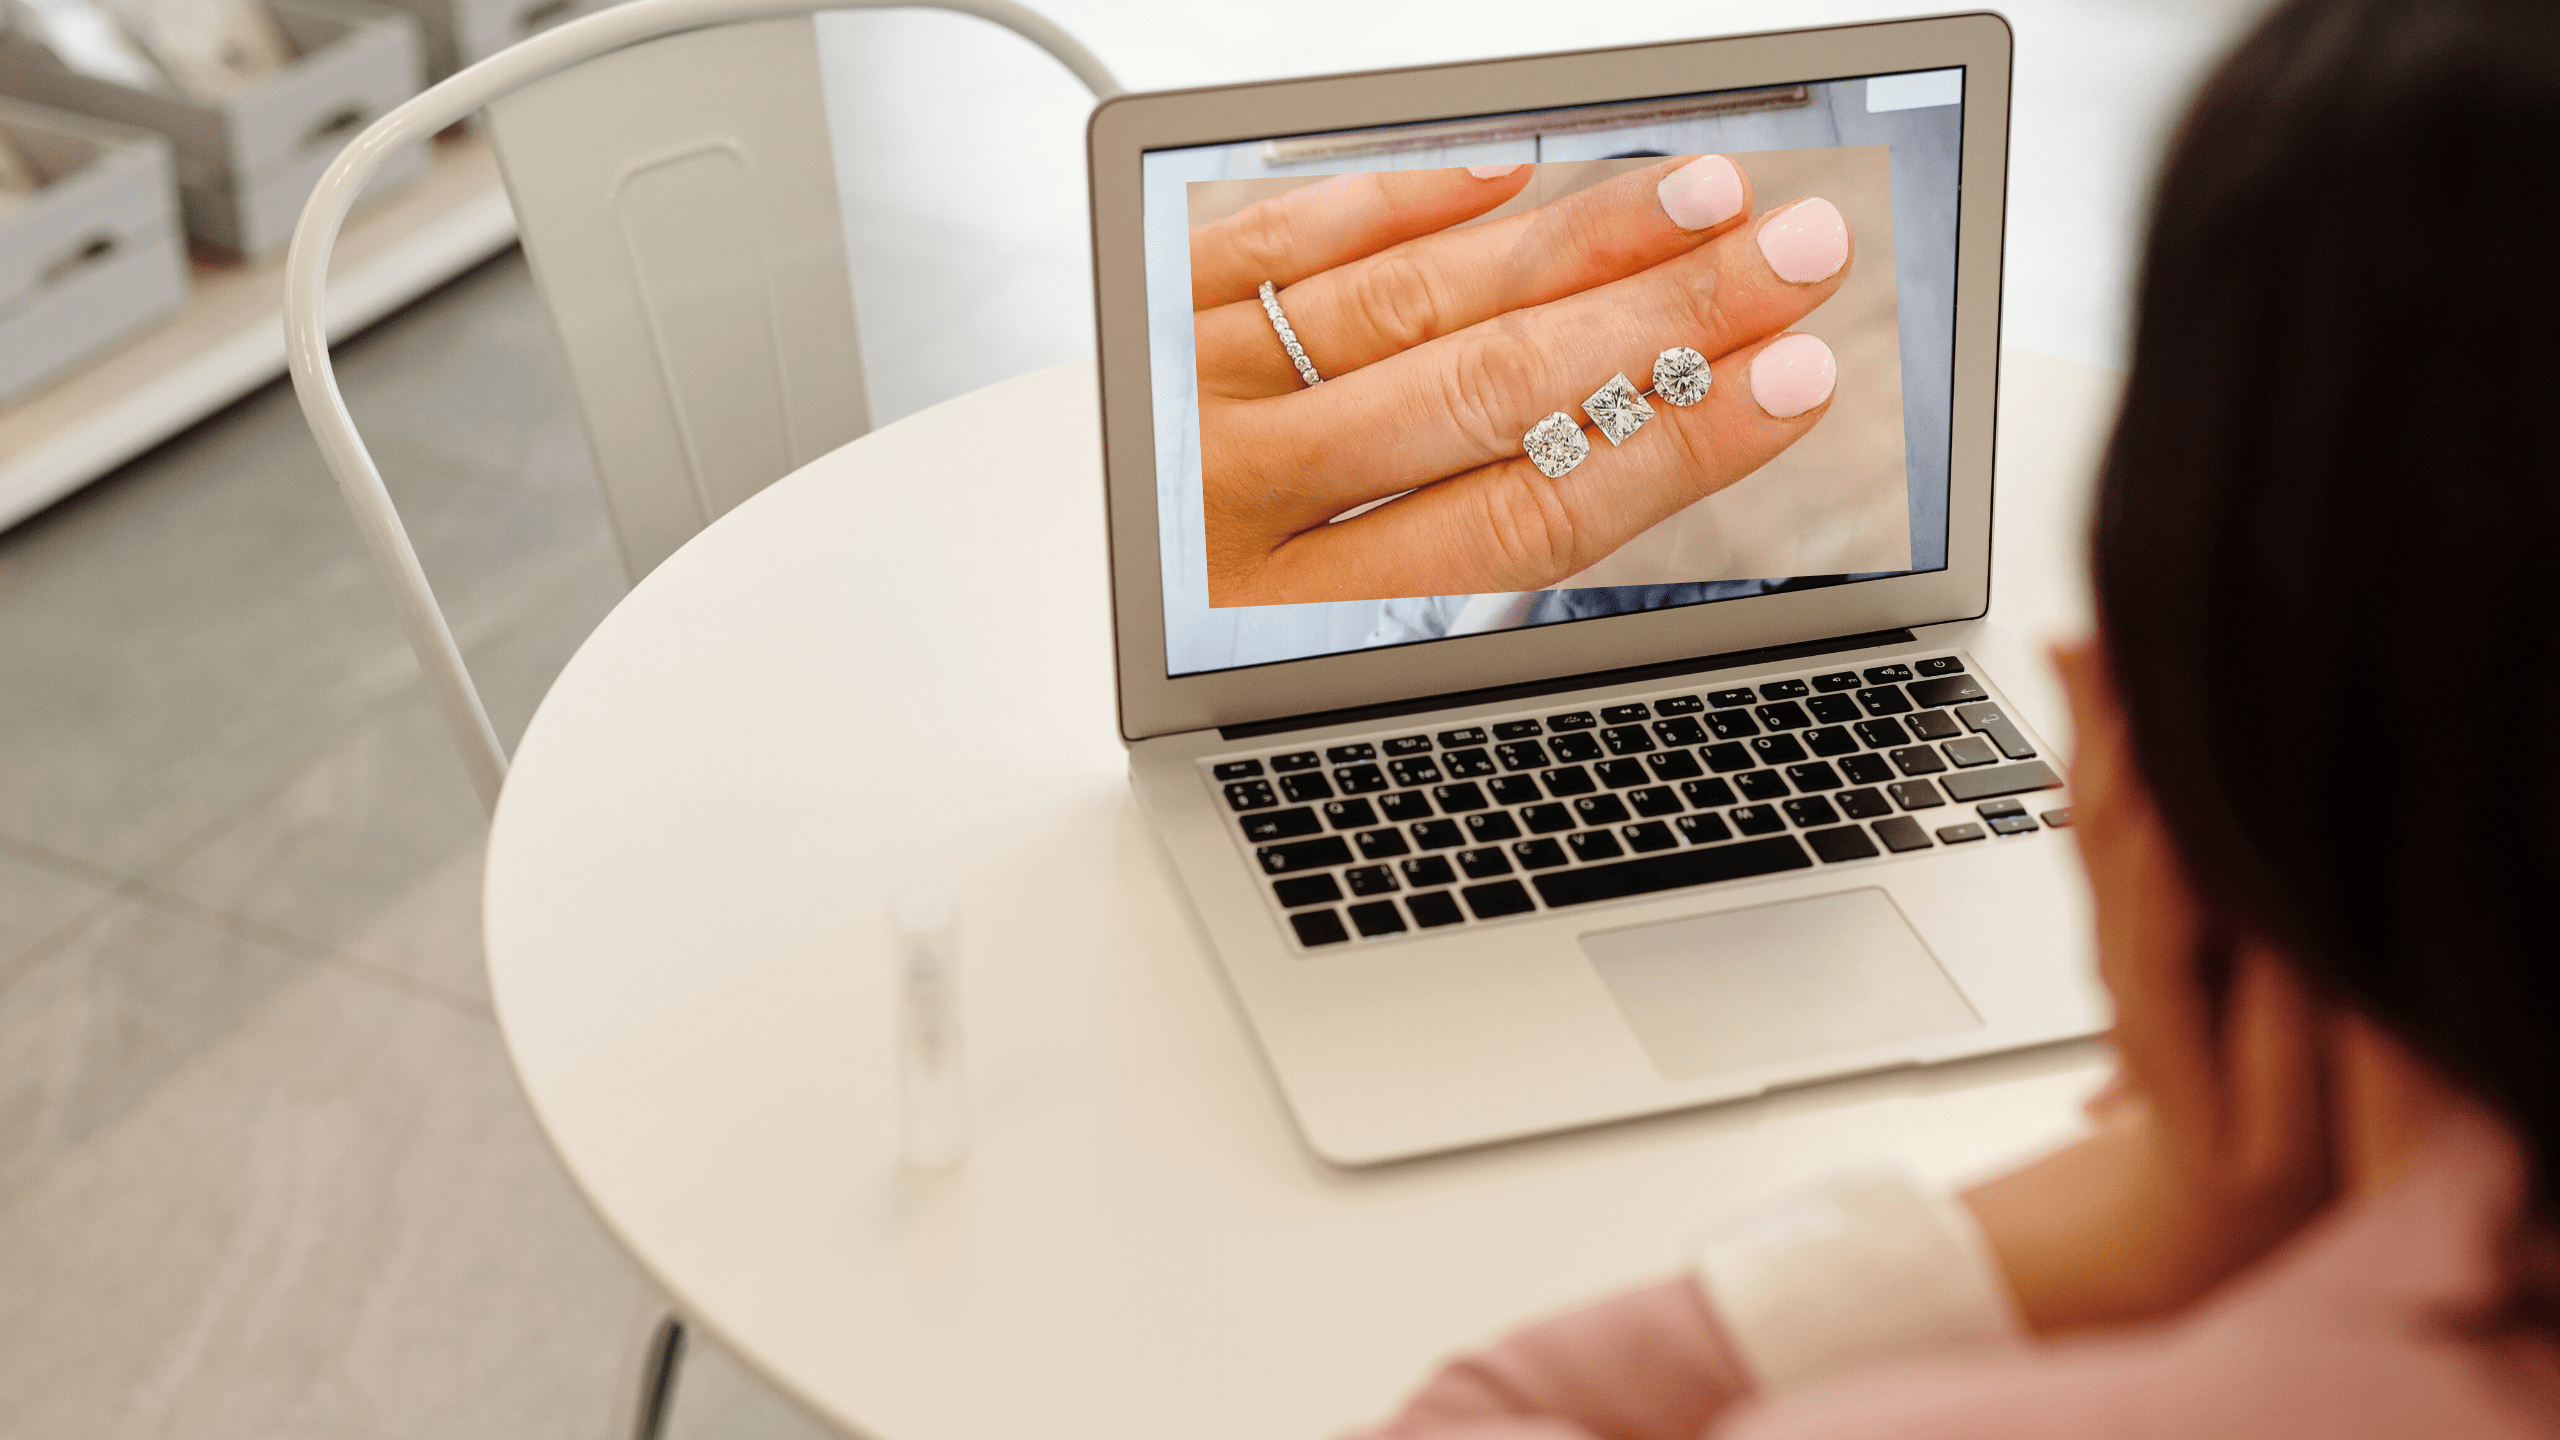 Virtual Engagement Ring Shopping